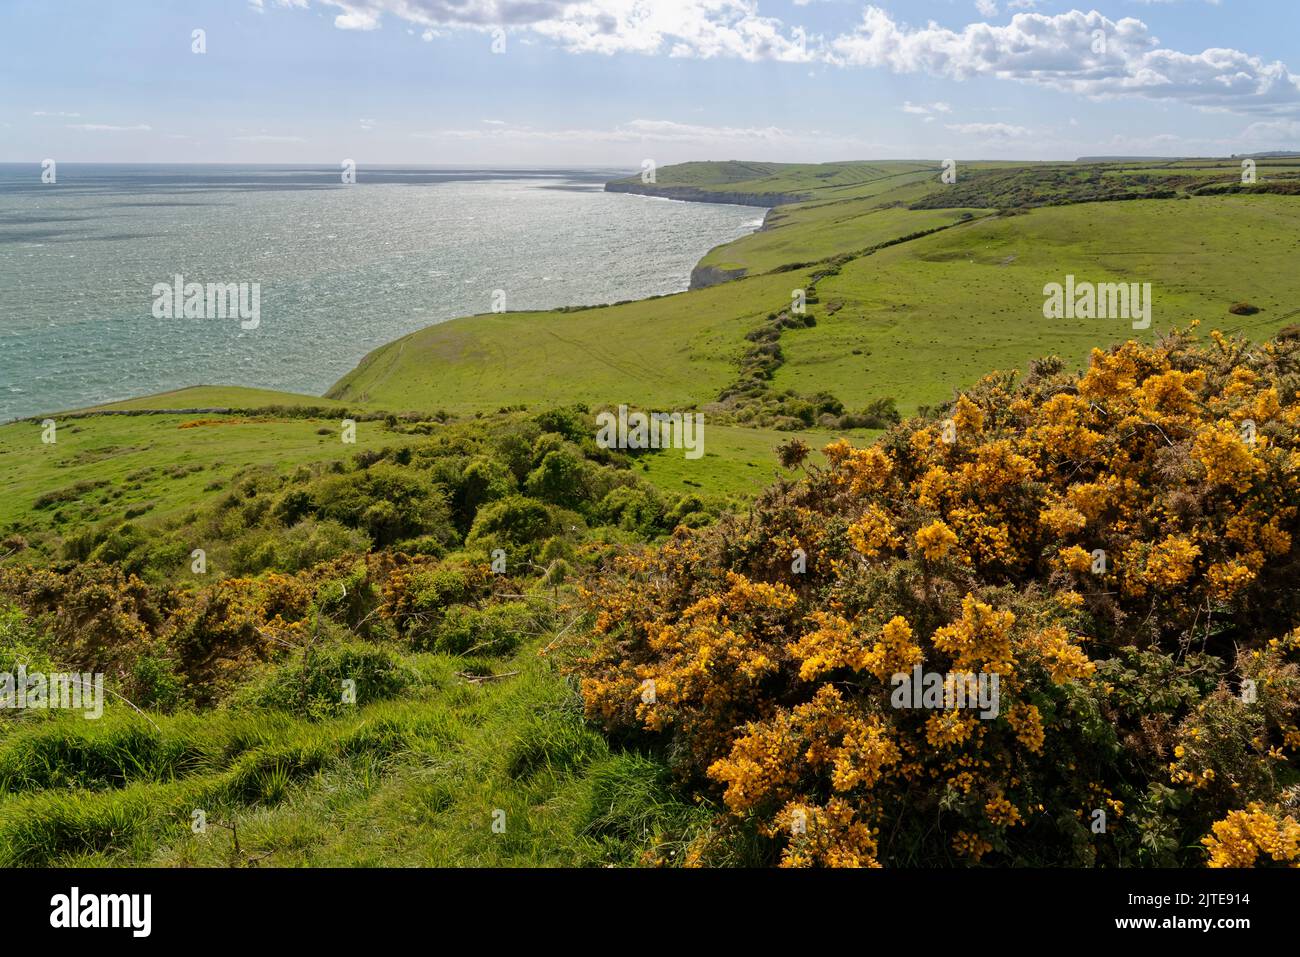 Vista general de la costa de Dorset desde Spyway hacia la cabeza de San Albán con el gorse común (Ulex europaeus) floreciendo en primer plano, cerca de Swanage, Reino Unido Foto de stock